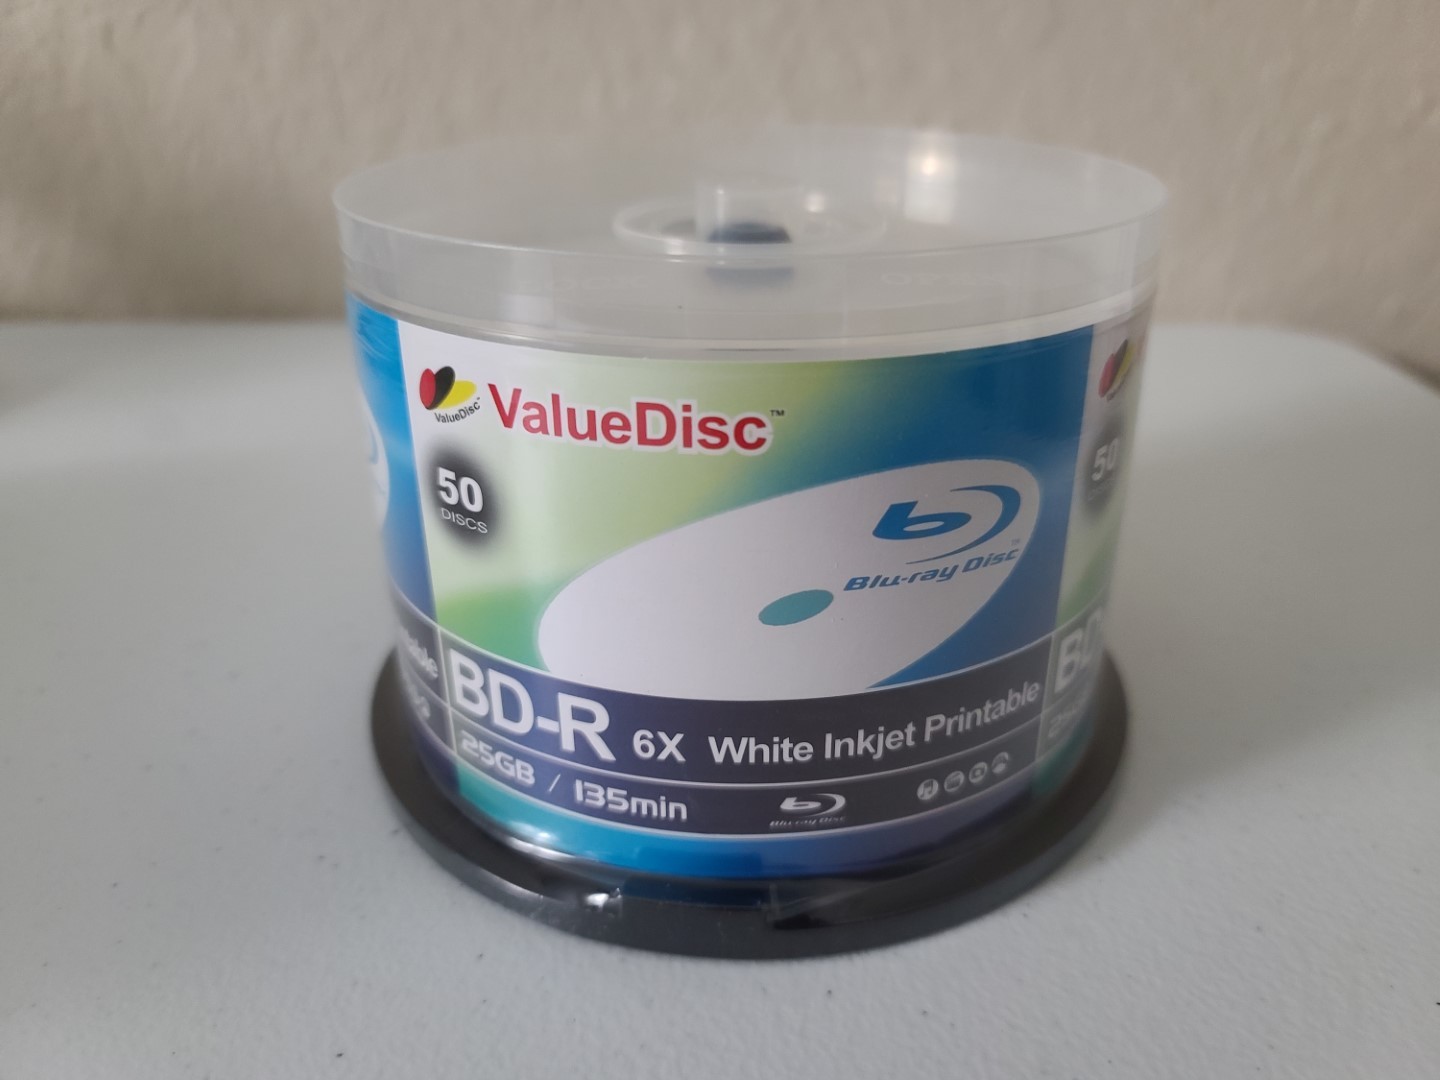 ValueDisc BD-R 25GB 50pk White Inkjet Printable 1